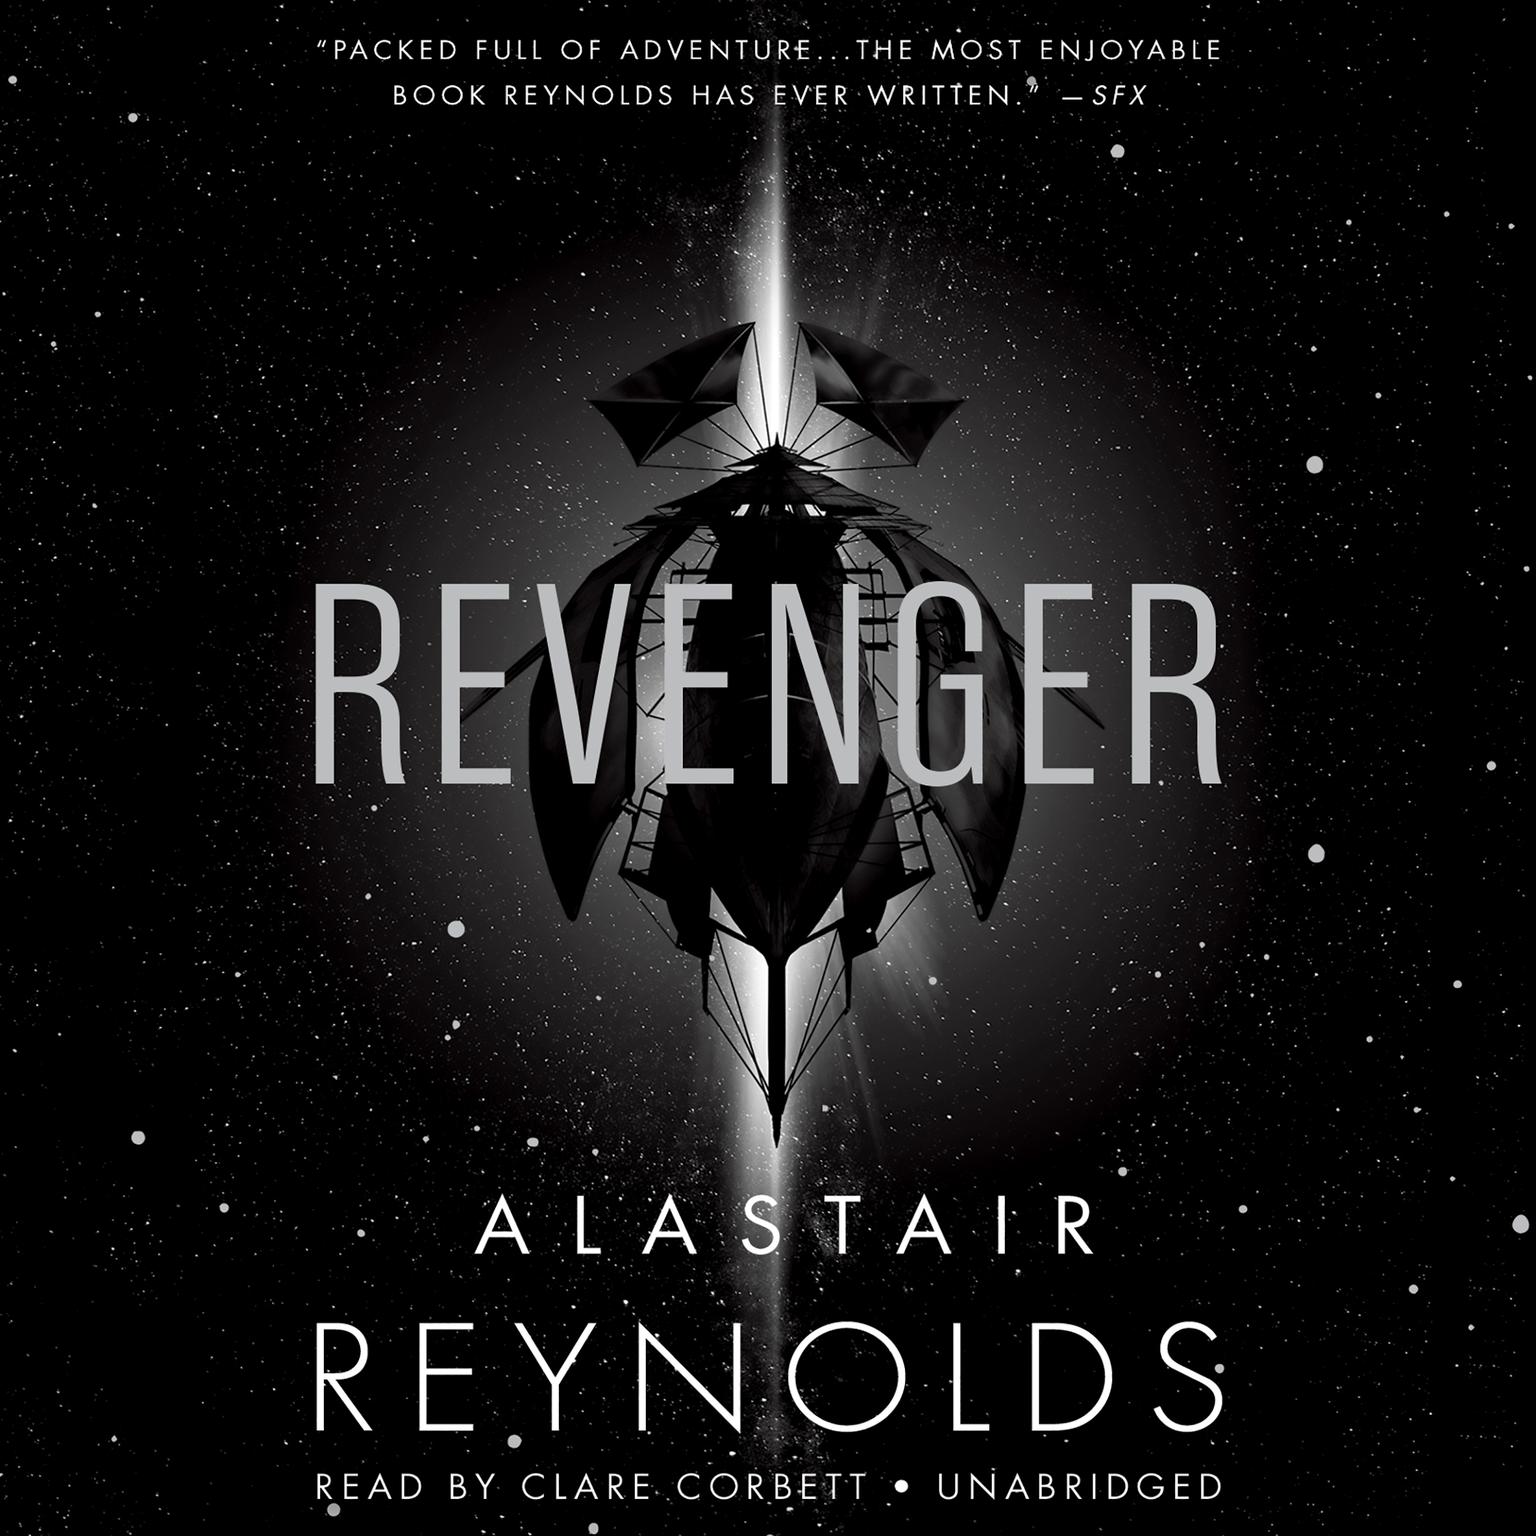 Revenger Audiobook, by Alastair Reynolds